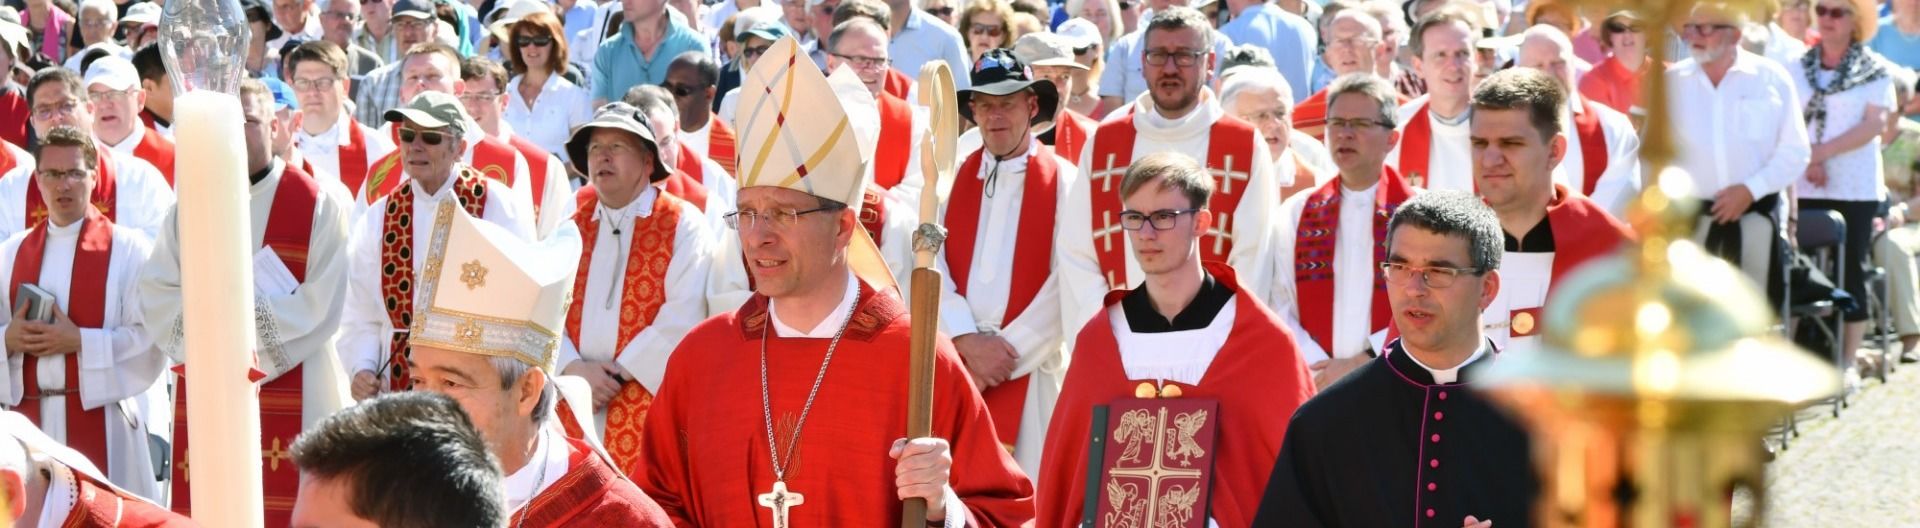 Neuer Bischof Dr. Michael Gerber predigte beim Bonifatiusfest – feierliche Eröffnung der traditionellen Bonifatiuswallfahrten